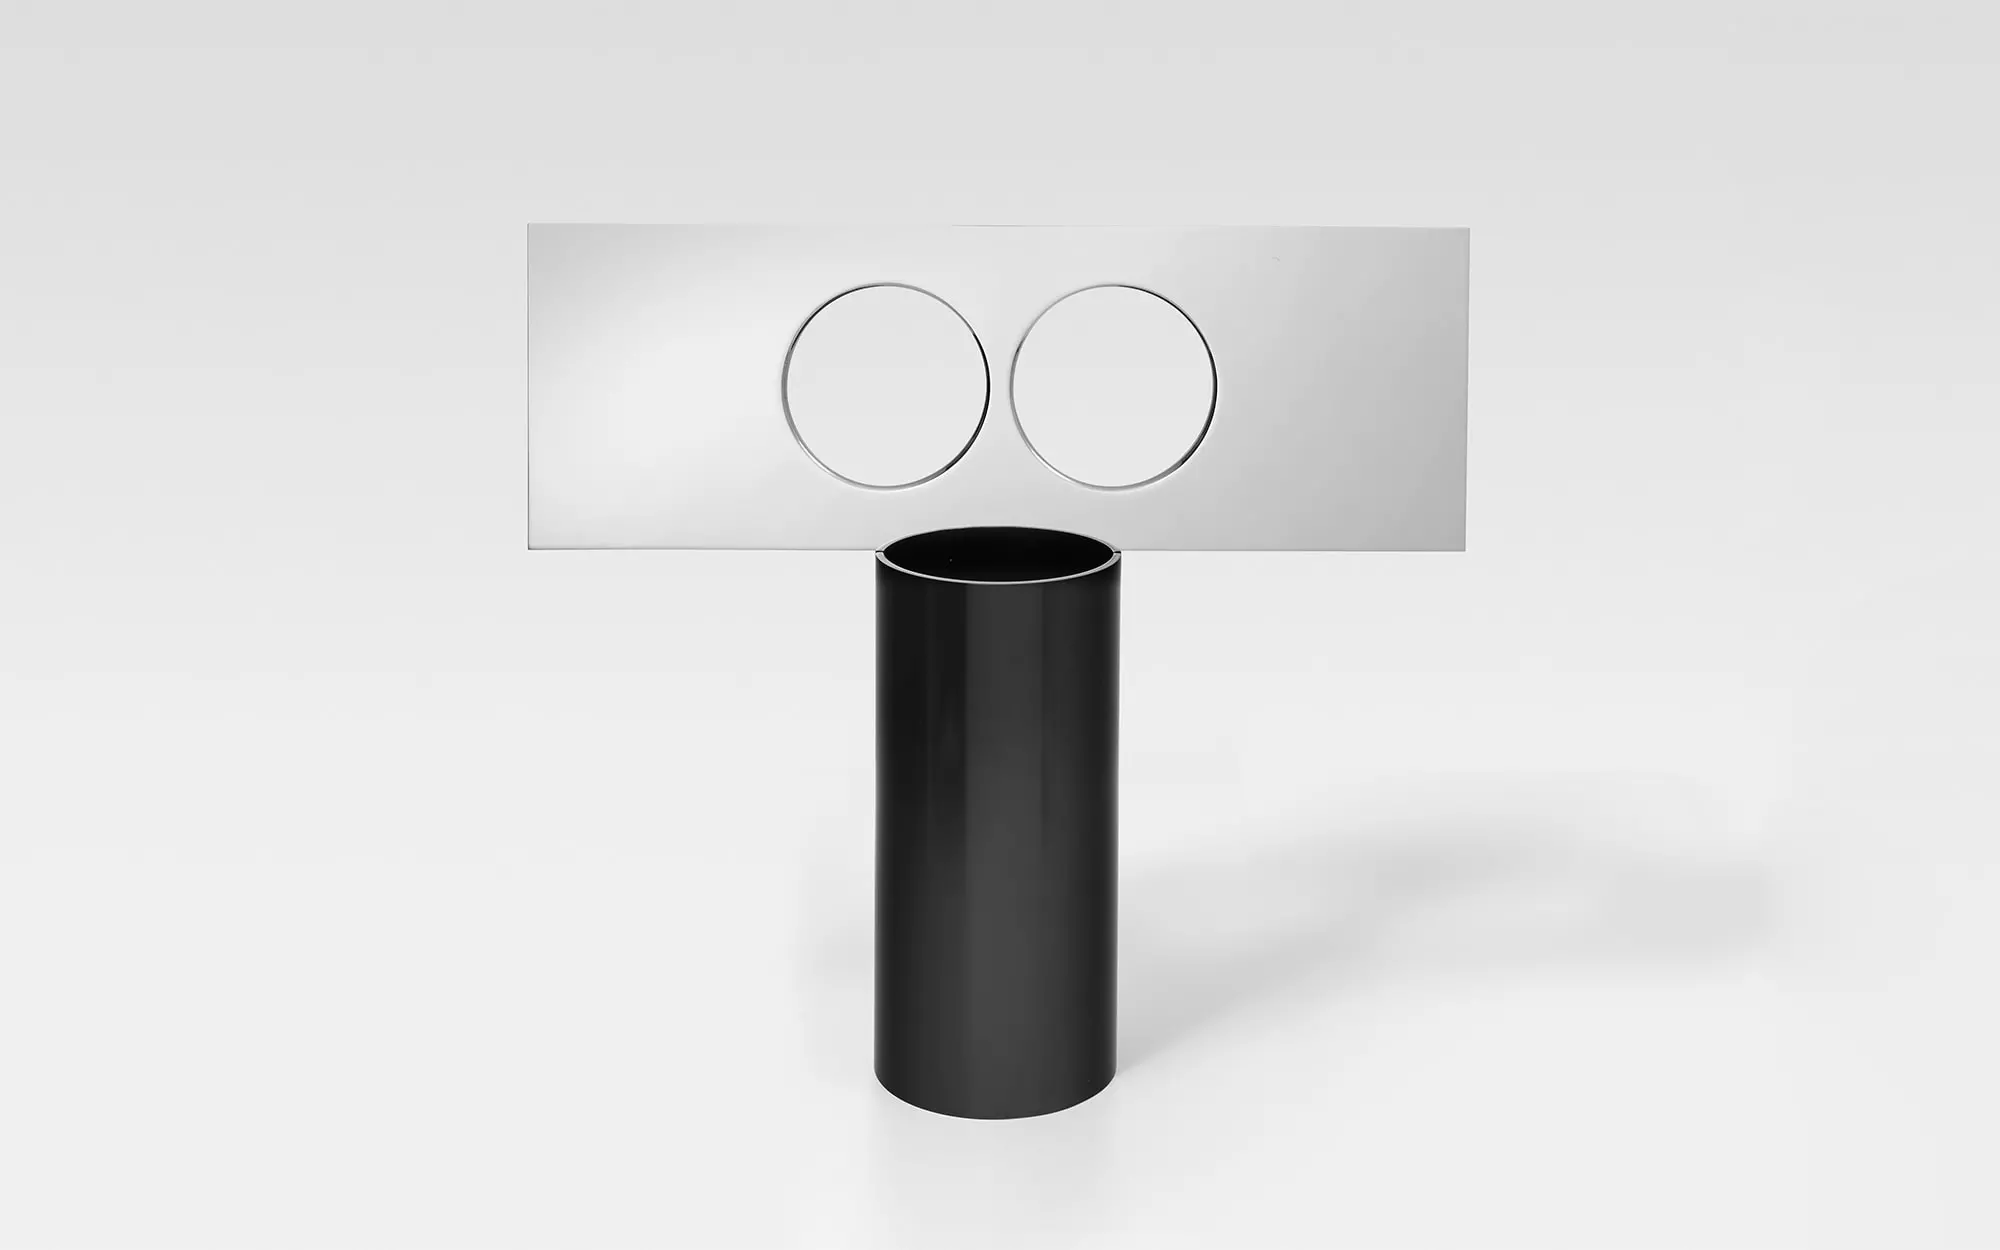 Lunettes - 2 Vase - Pierre Charpin - Pendant light - Galerie kreo